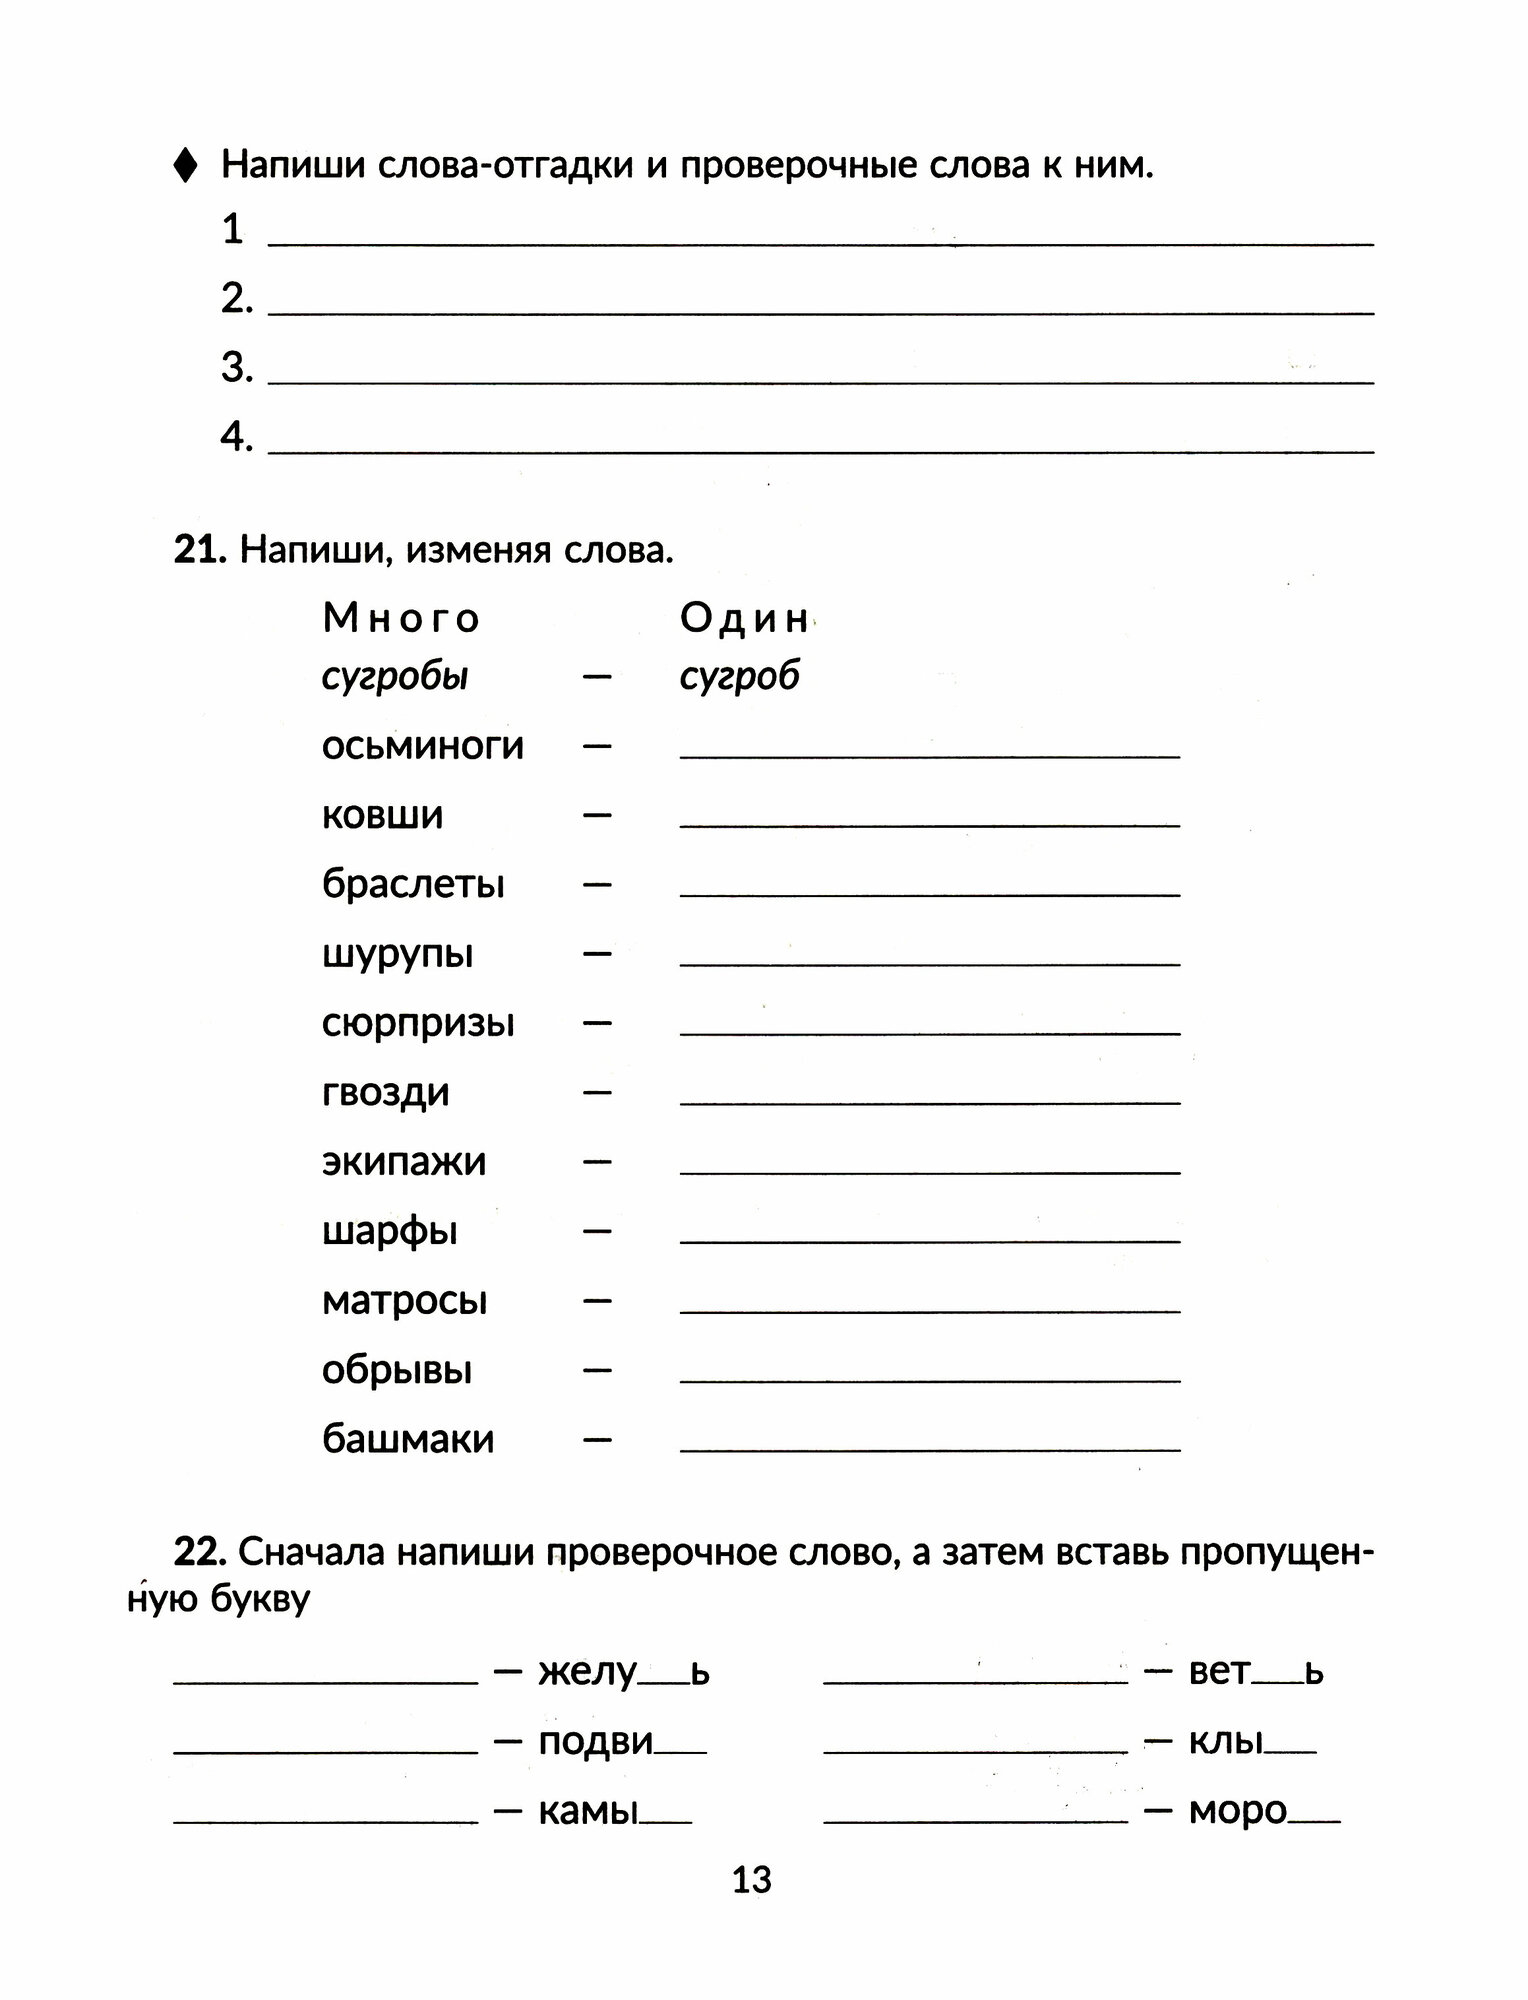 Тренажёр по чистописанию с правилами русского языка, проверочными диктантами. 1-4 классы - фото №3